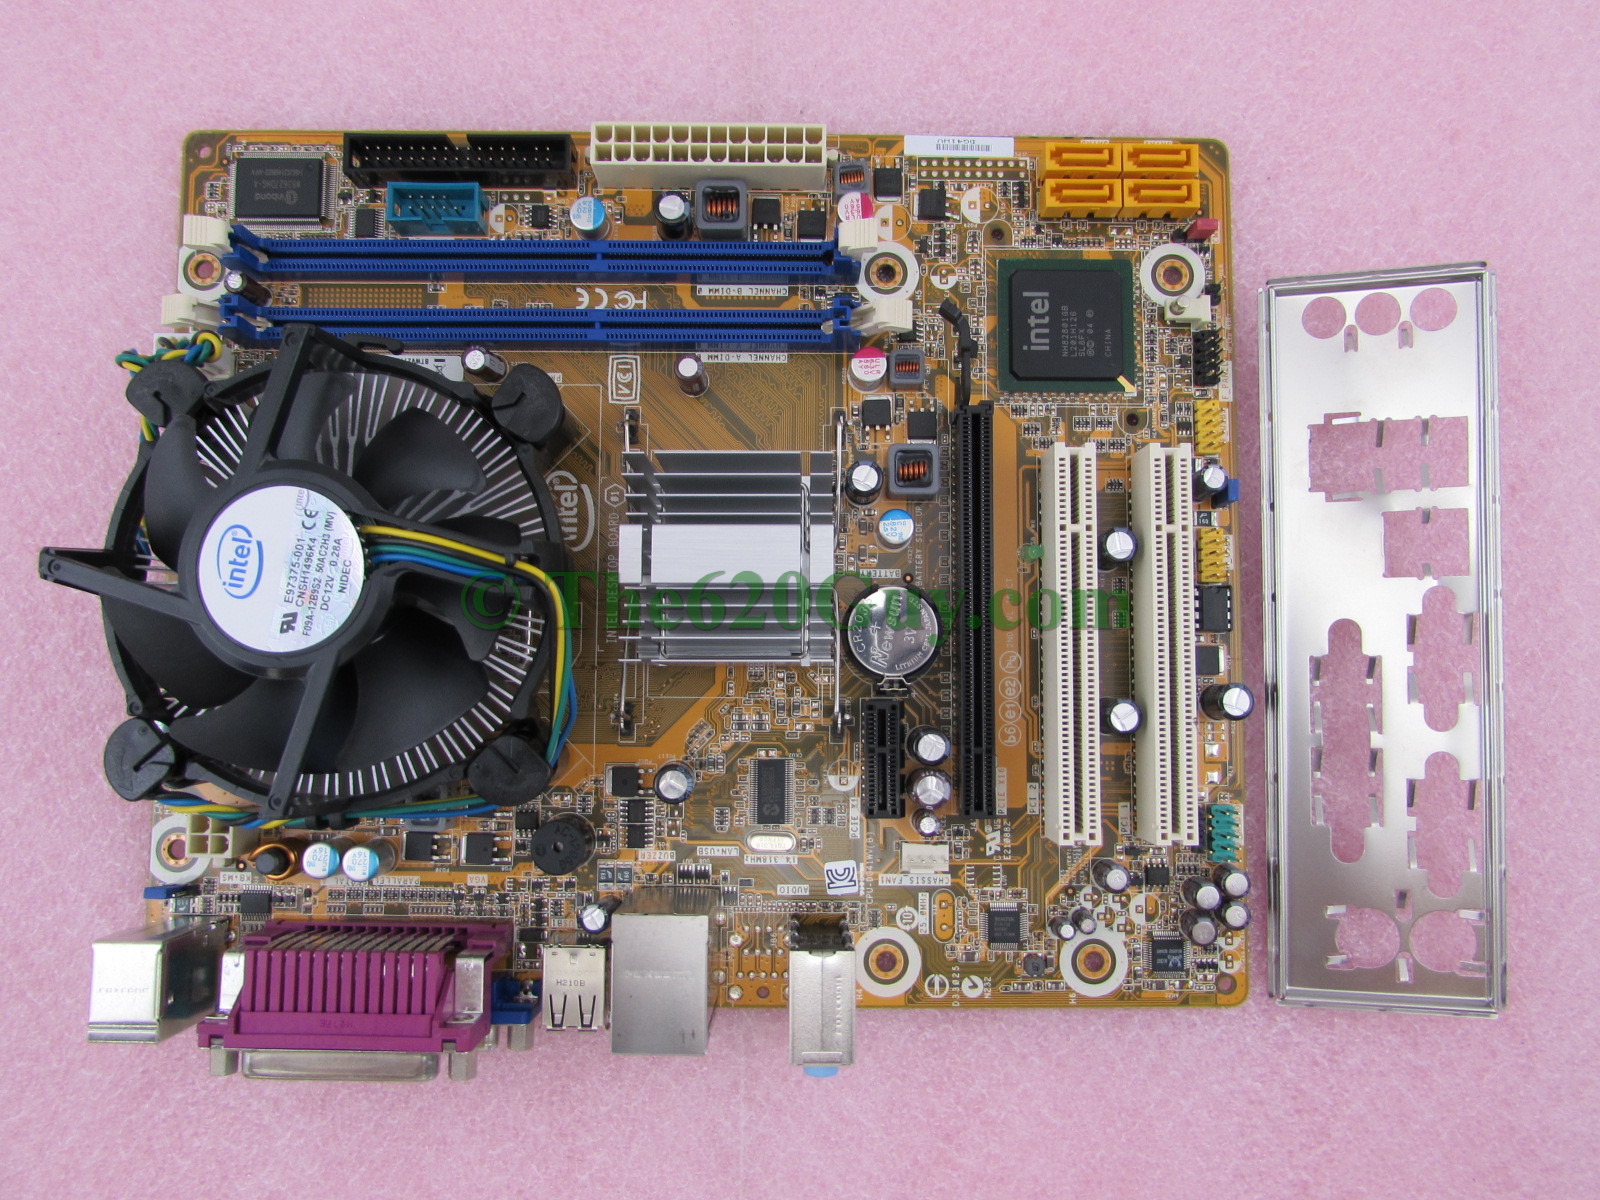 Intel DG41WV LGA775 mATX Motherboard + Pentium Dual Core E5700 3GHz CPU